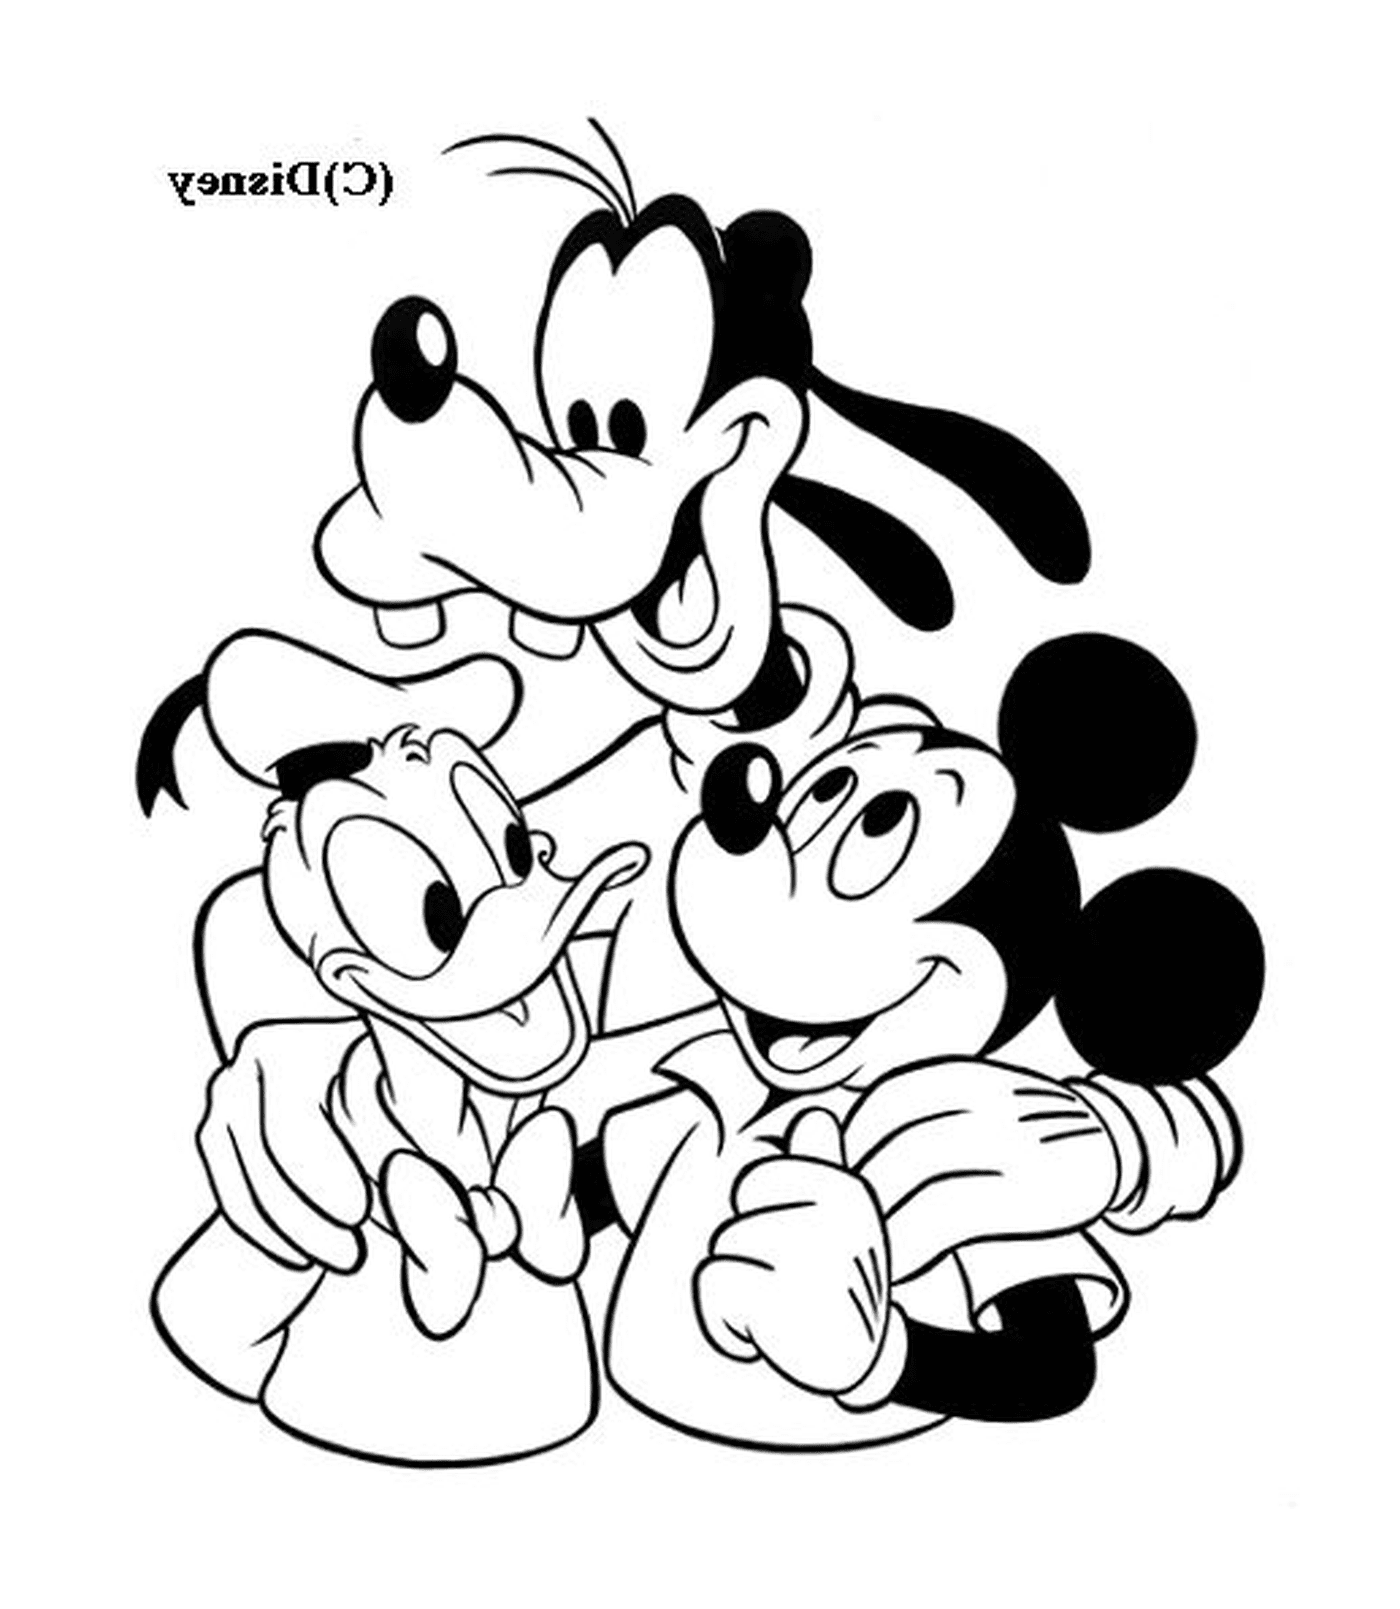  米老鼠和他的朋友丁哥和唐纳德 